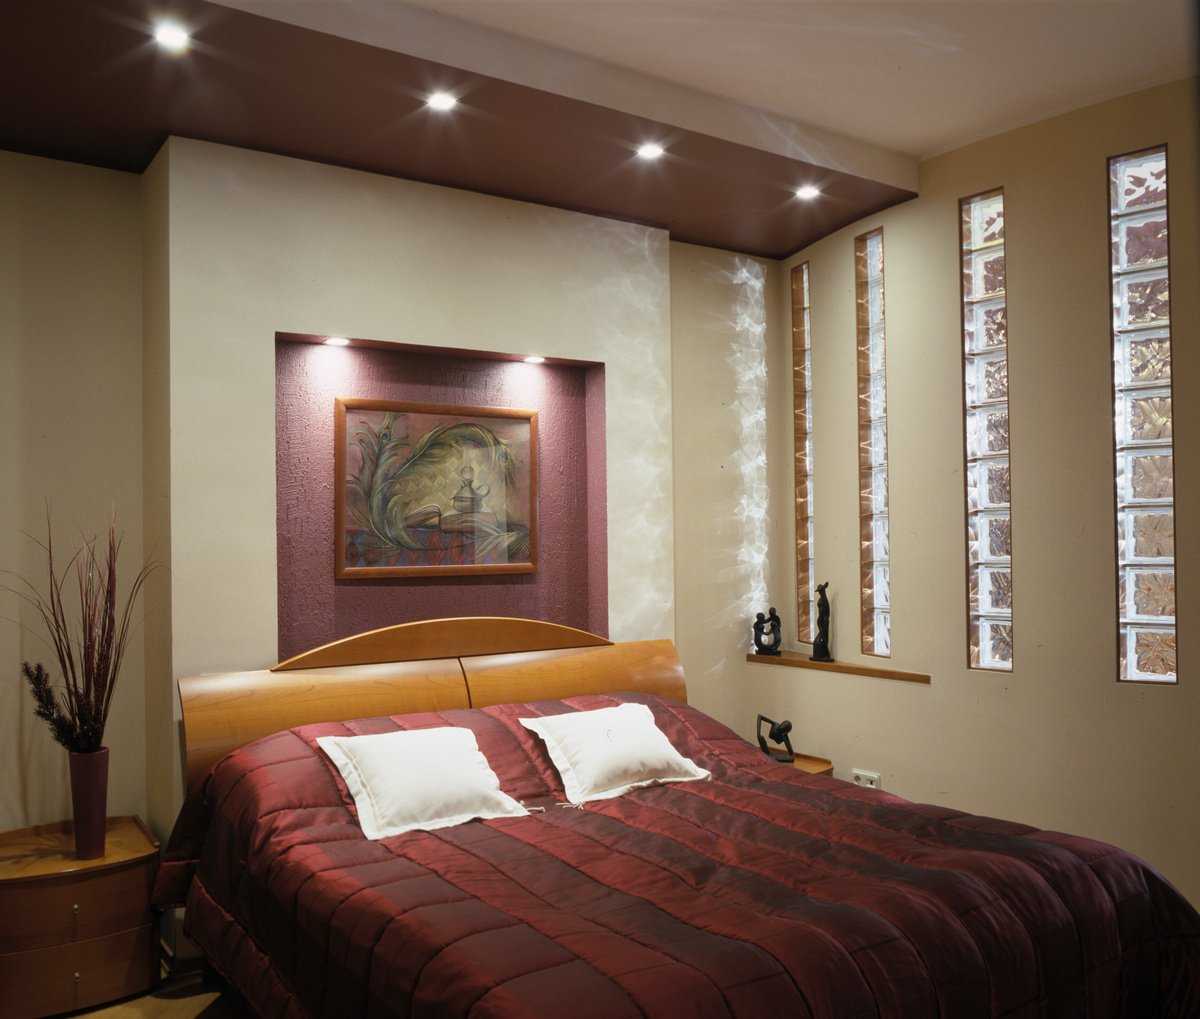 Ниши из гипсокартона в спальне  фото преимущества такого интерьера в комнате Варианты обустройства и оформления арки Примеры дизайна стен над кроватью